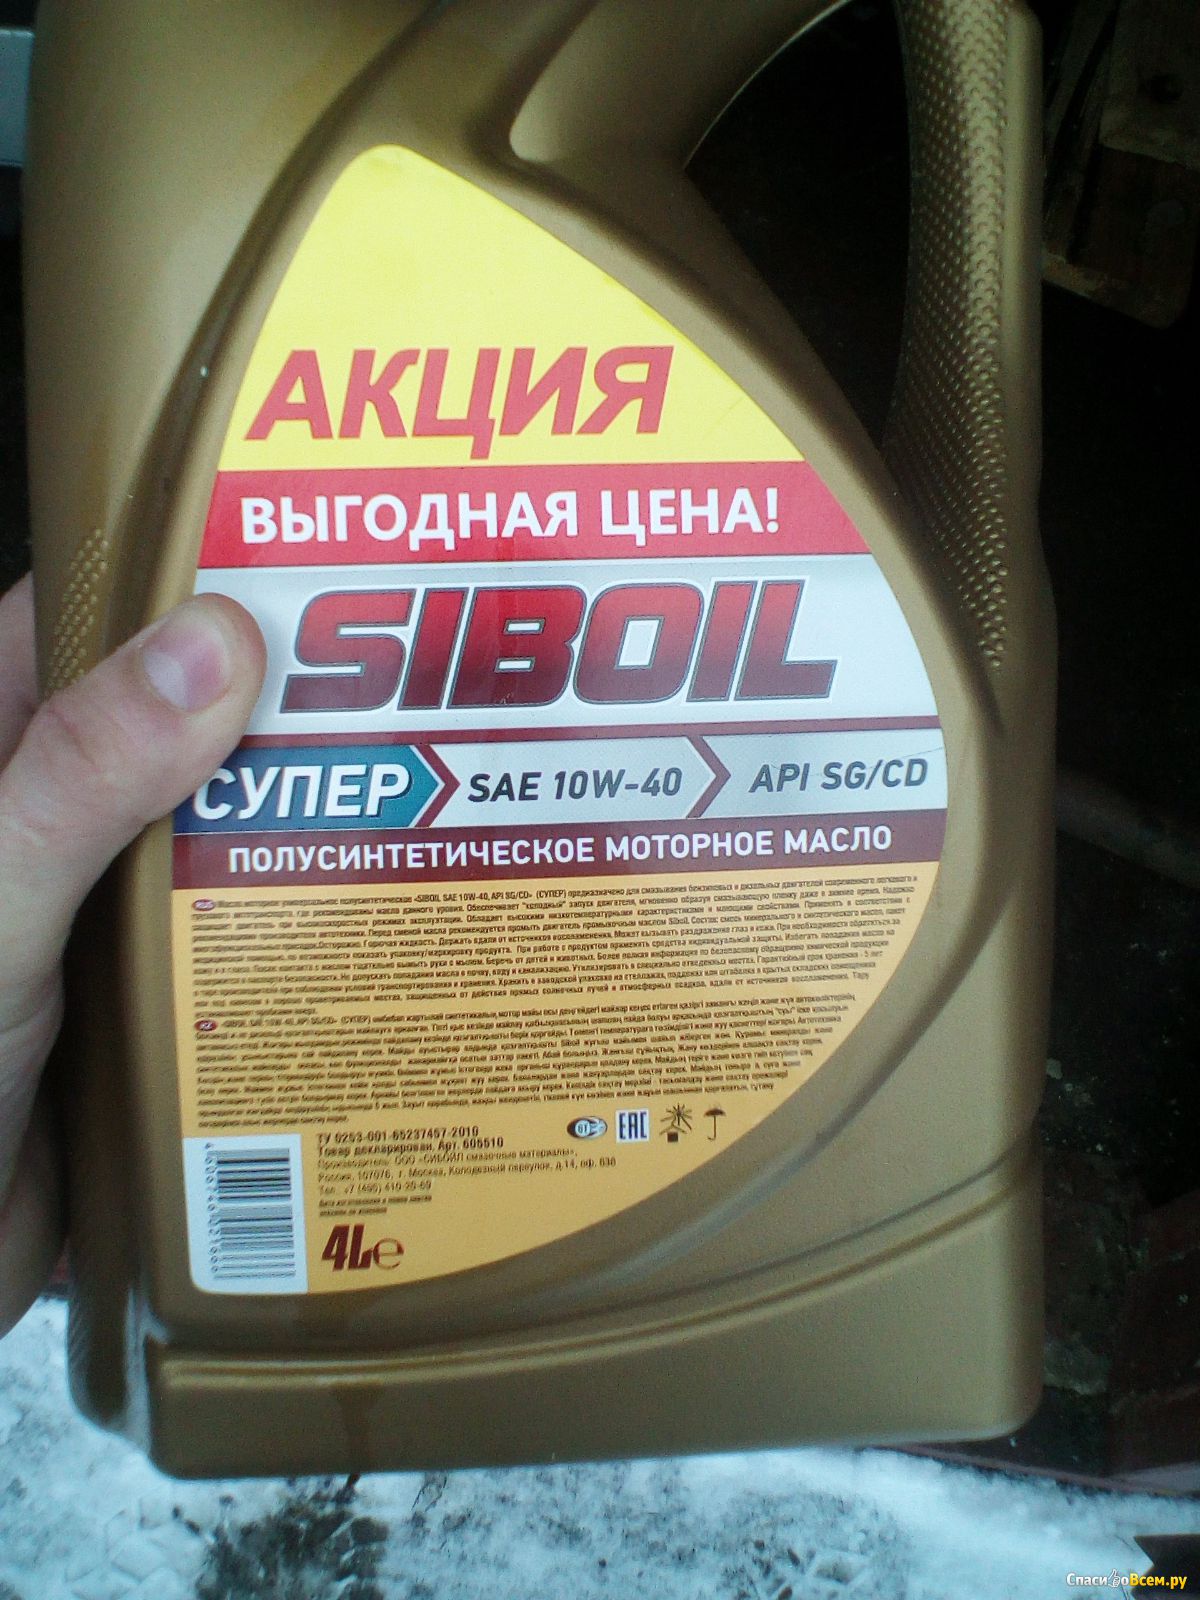 Отзыв про Моторное масло Siboil Супер 10w40: 